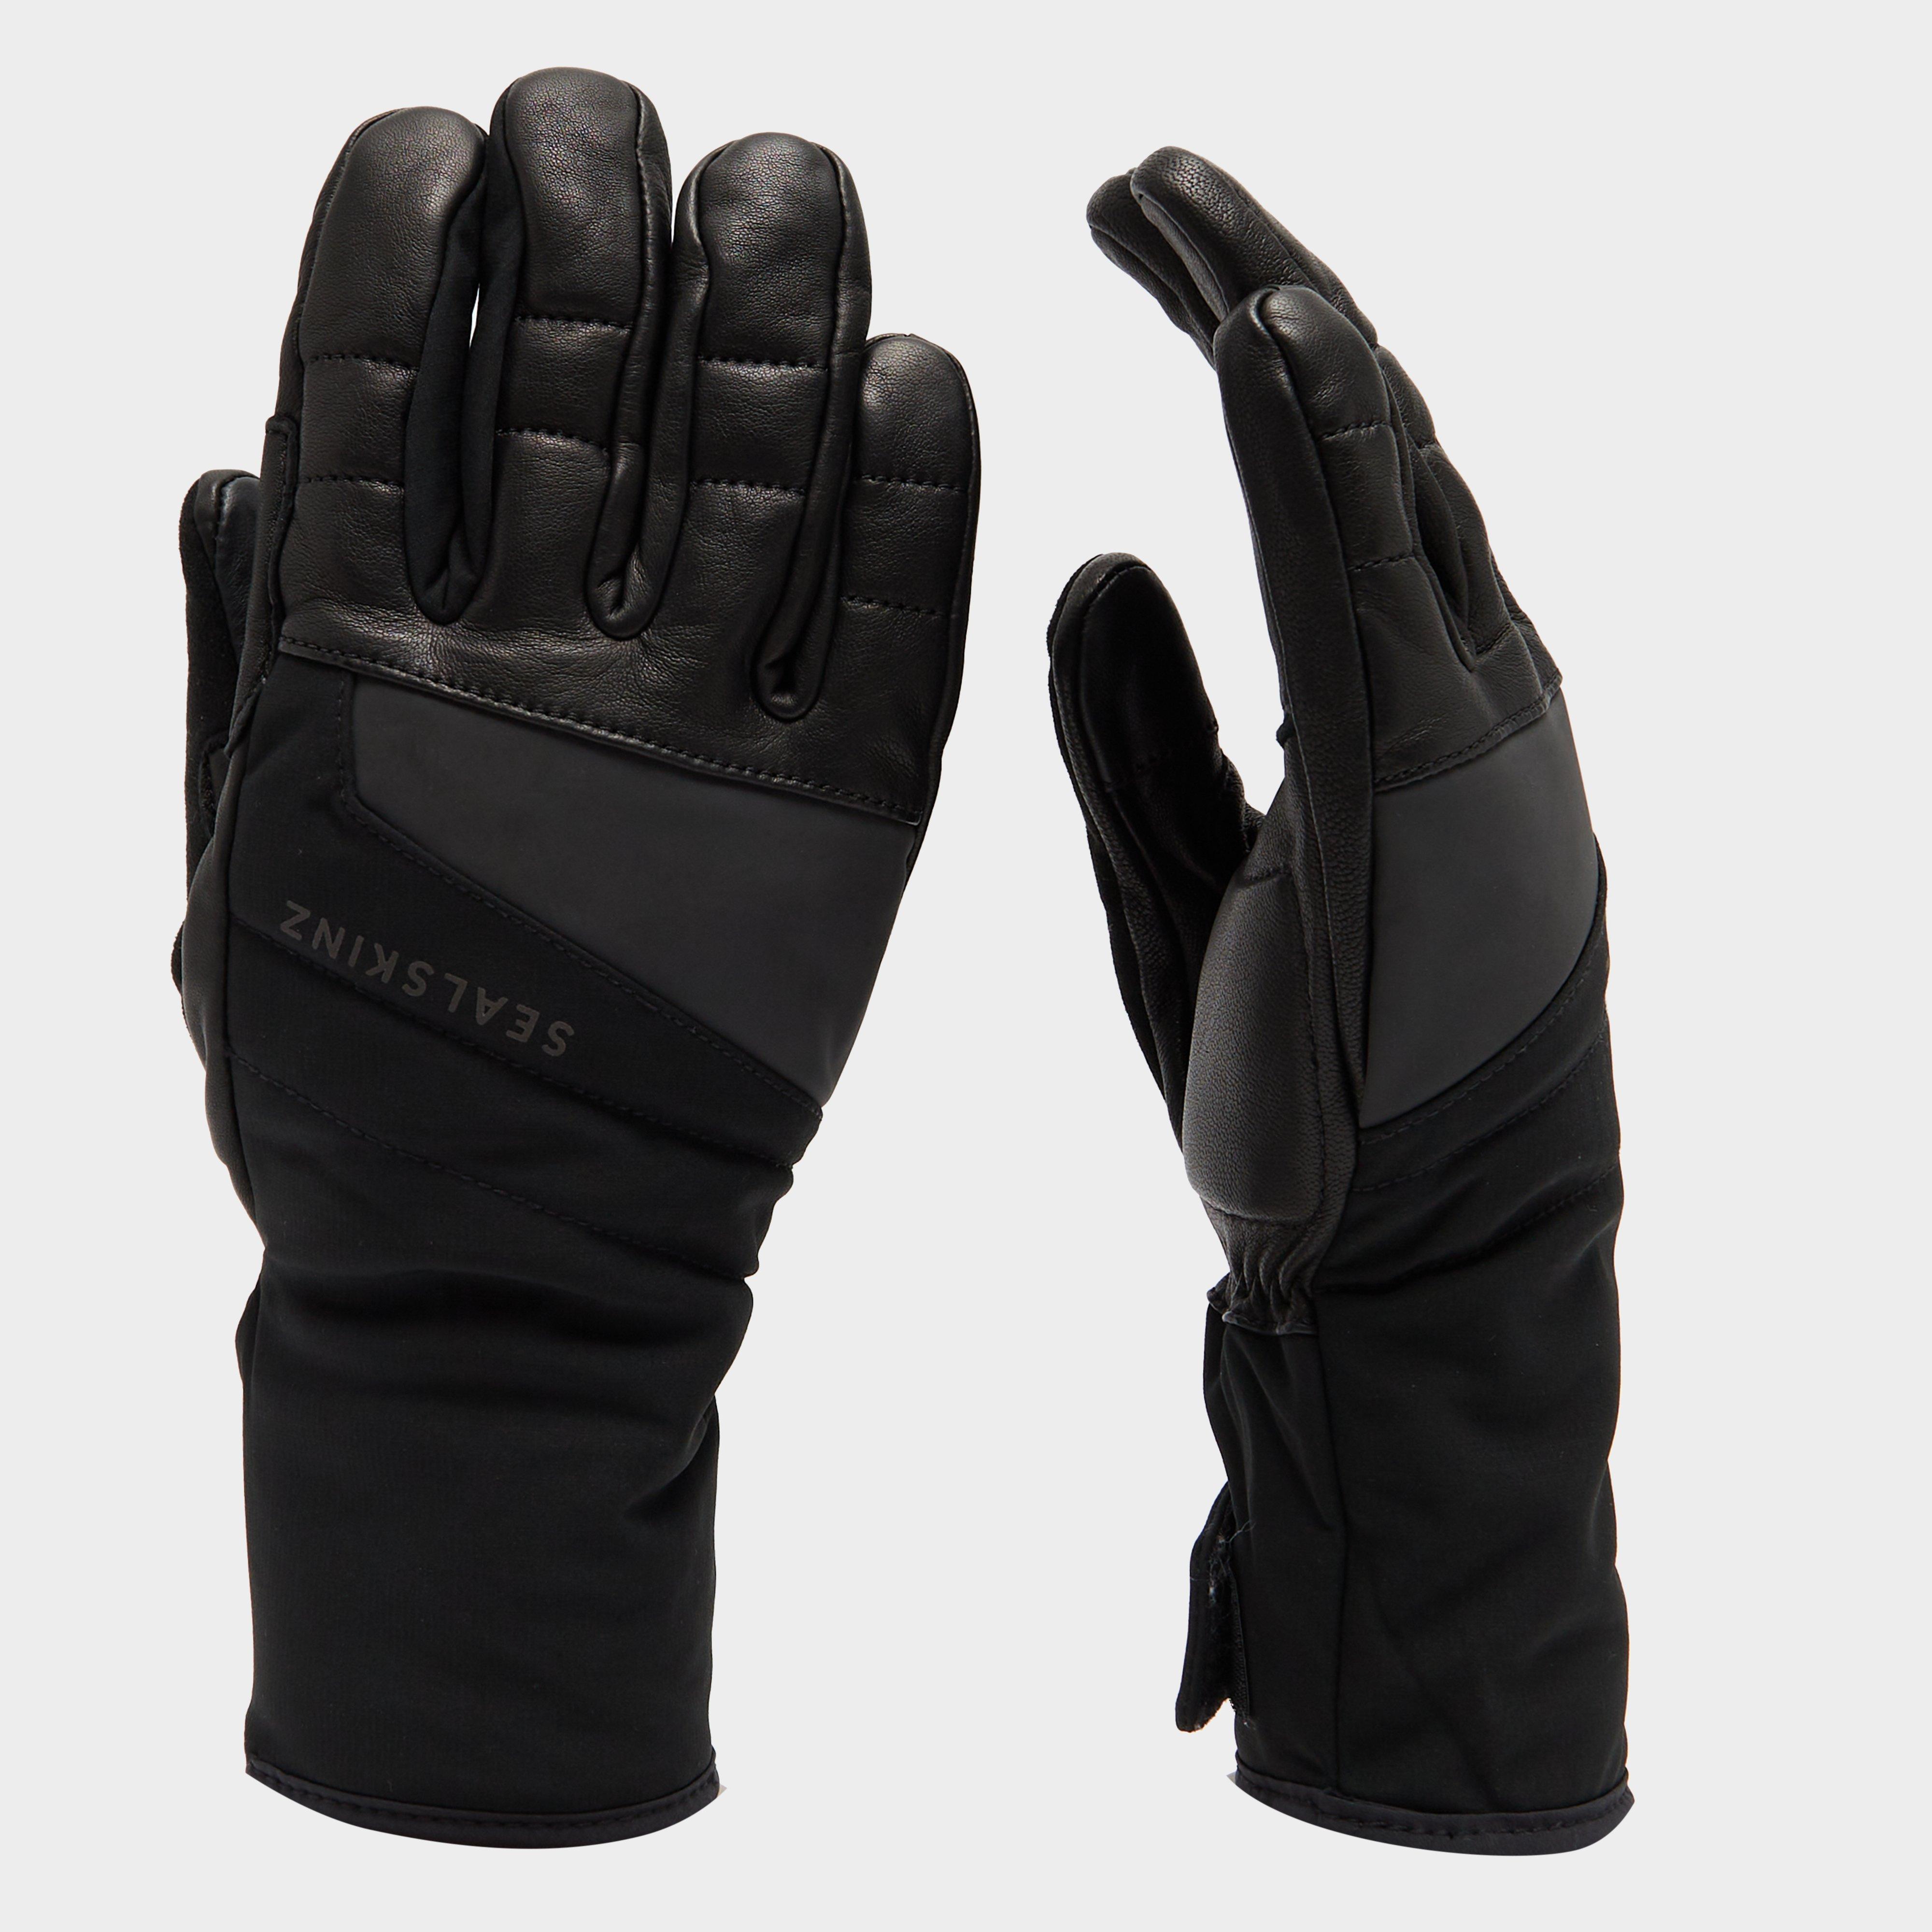 Sealskinz Waterproof Extreme Cold Weather Gauntlet In Black - Black/bl  Black/bl